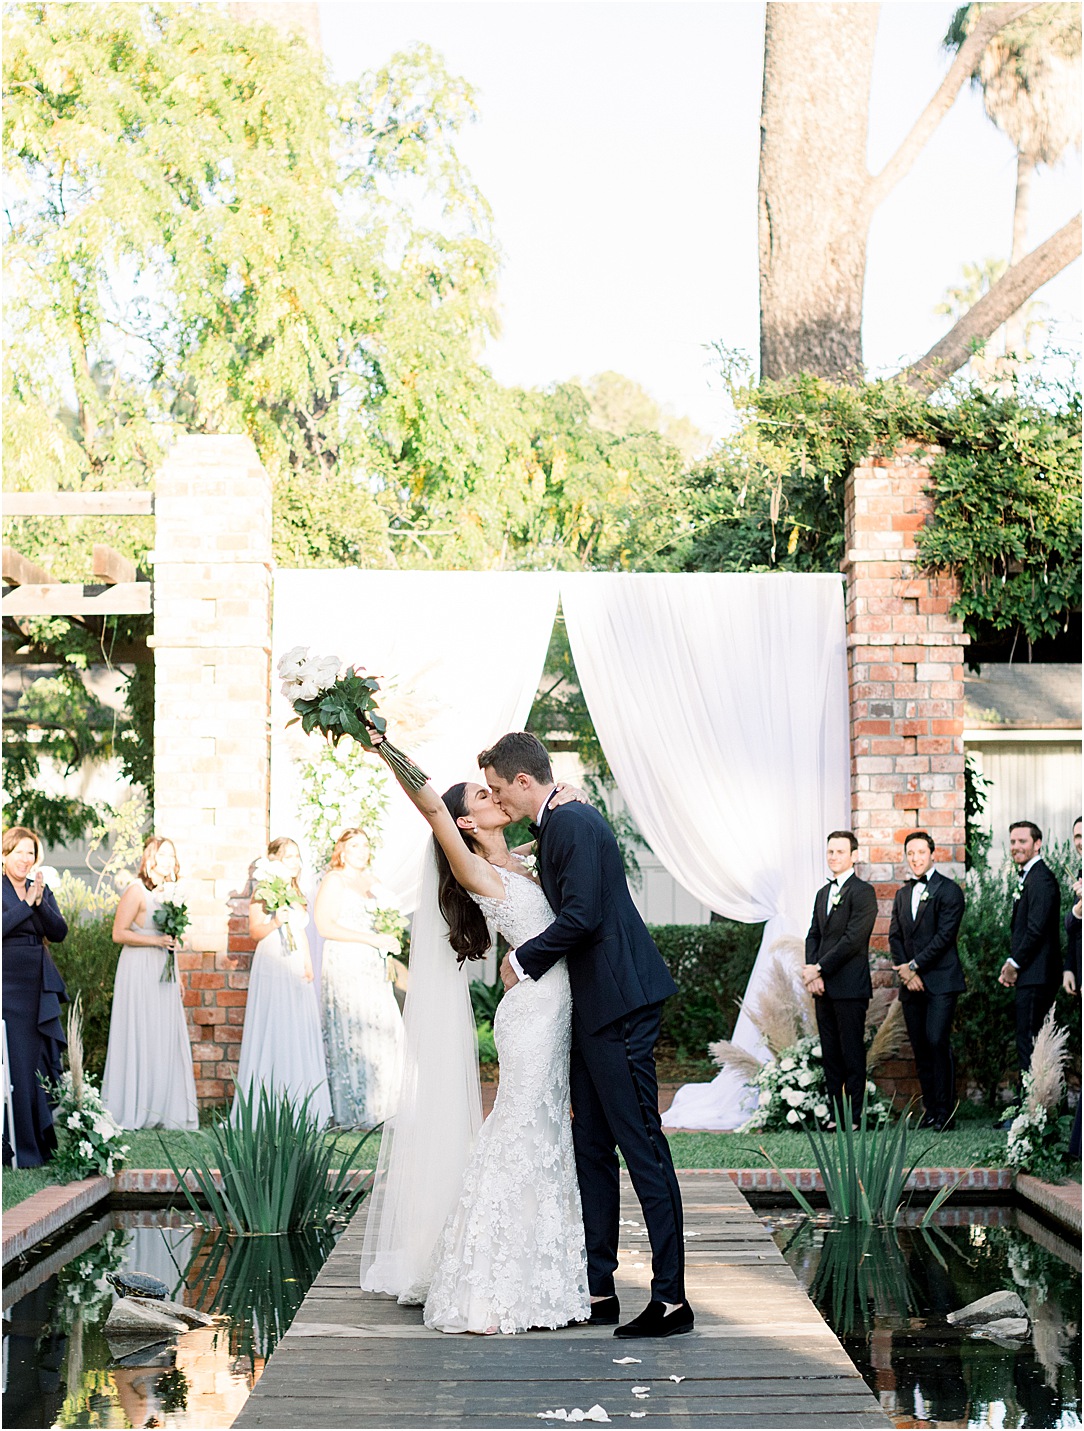 First Kiss & Ceremony Space at Belmond El Encanto Wedding in Santa Barbara, Ca